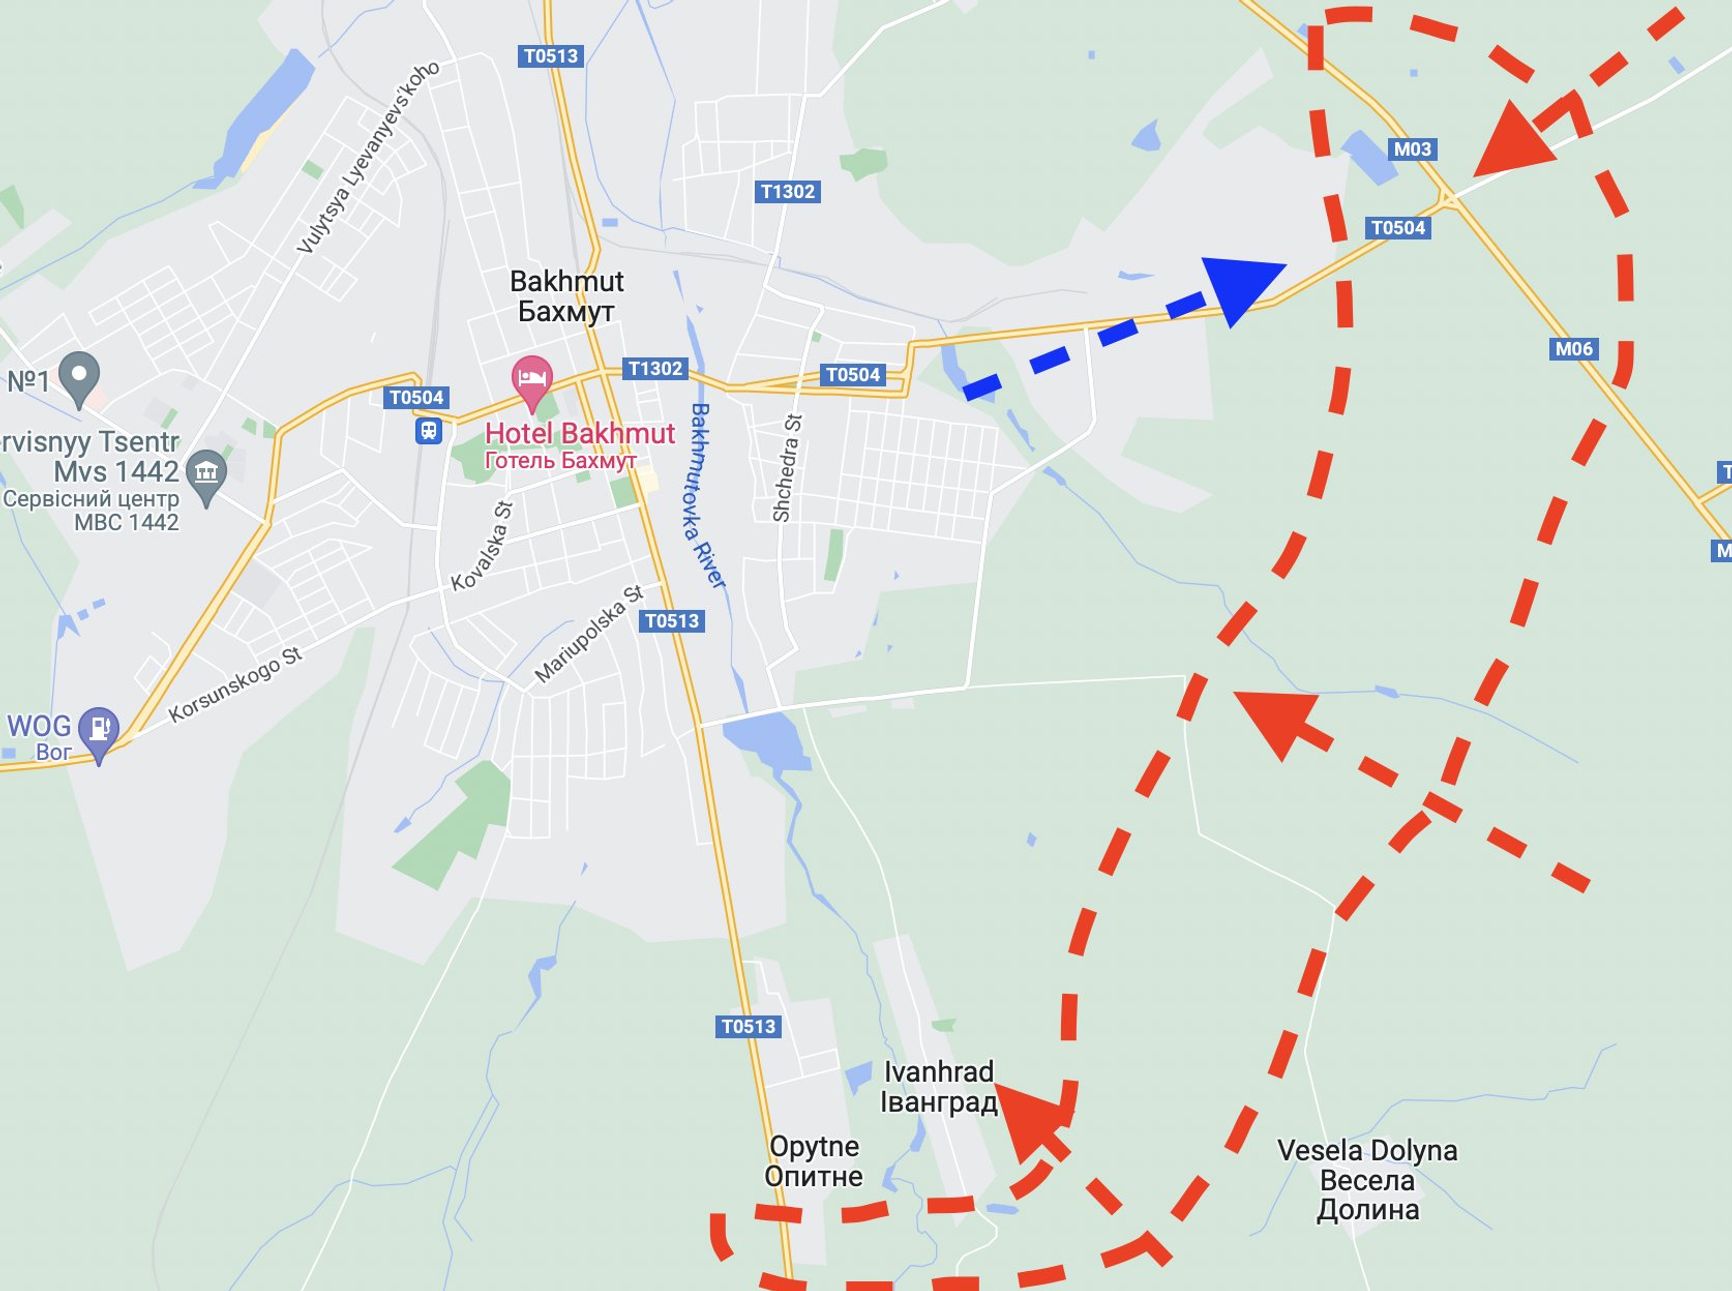 ВСУ расширяется на восток, по Антоновскому мосту прилетело шесть ракет HIMARS. Что происходит на линии фронта